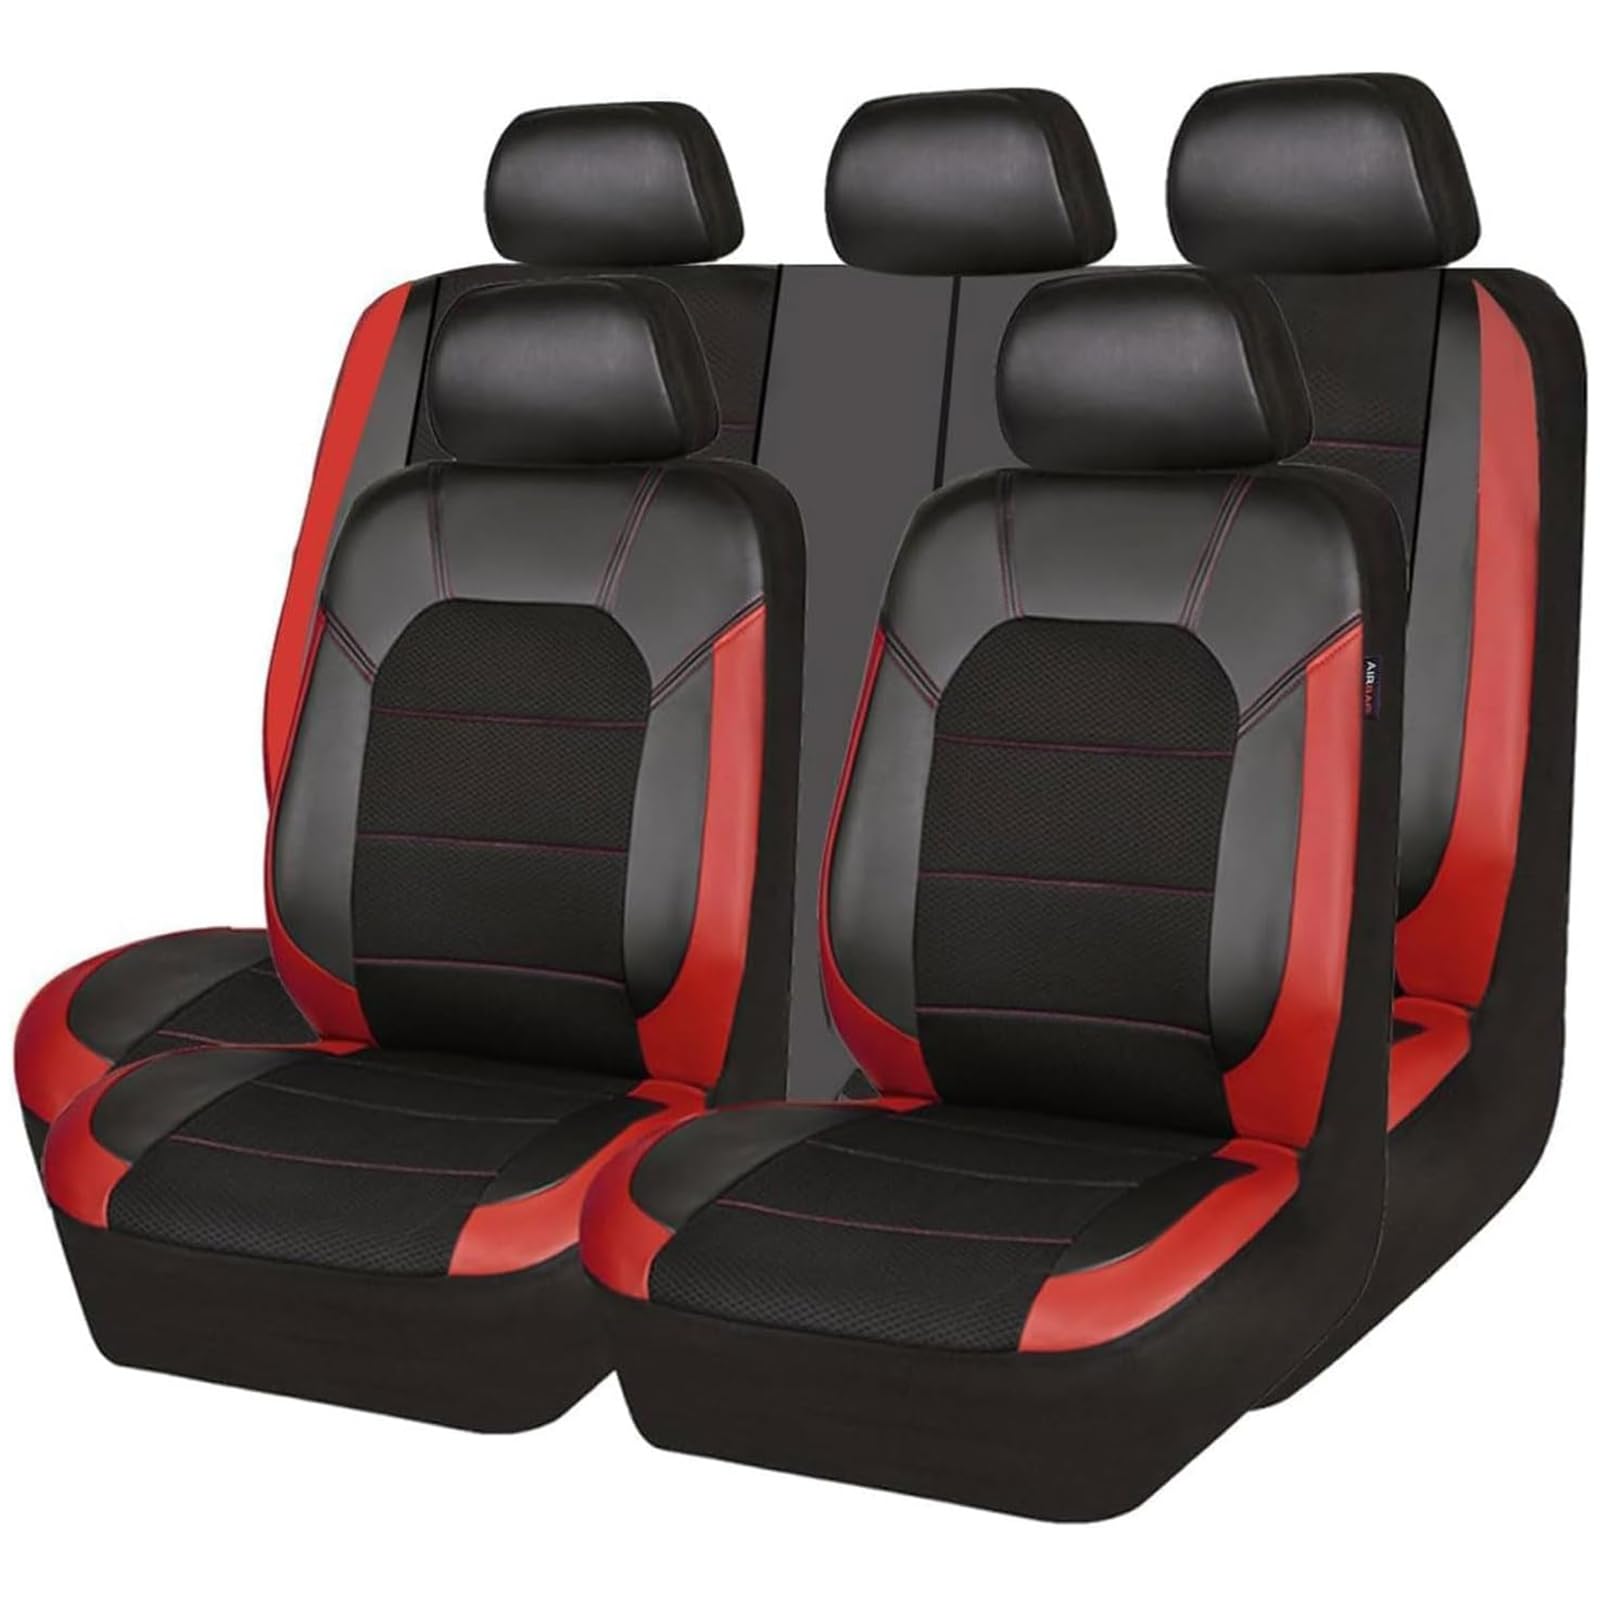 ZXAJDWNU Auto Leder Sitzbezüge Sets Für Nissan Micra K12 2003-2010, 5 Sitze Allwetter Vorne Und Hinten Komfortabler Atmungsaktiv Sitzbezüge Sitzschoner Innenraum Zubehör,B/Red von ZXAJDWNU